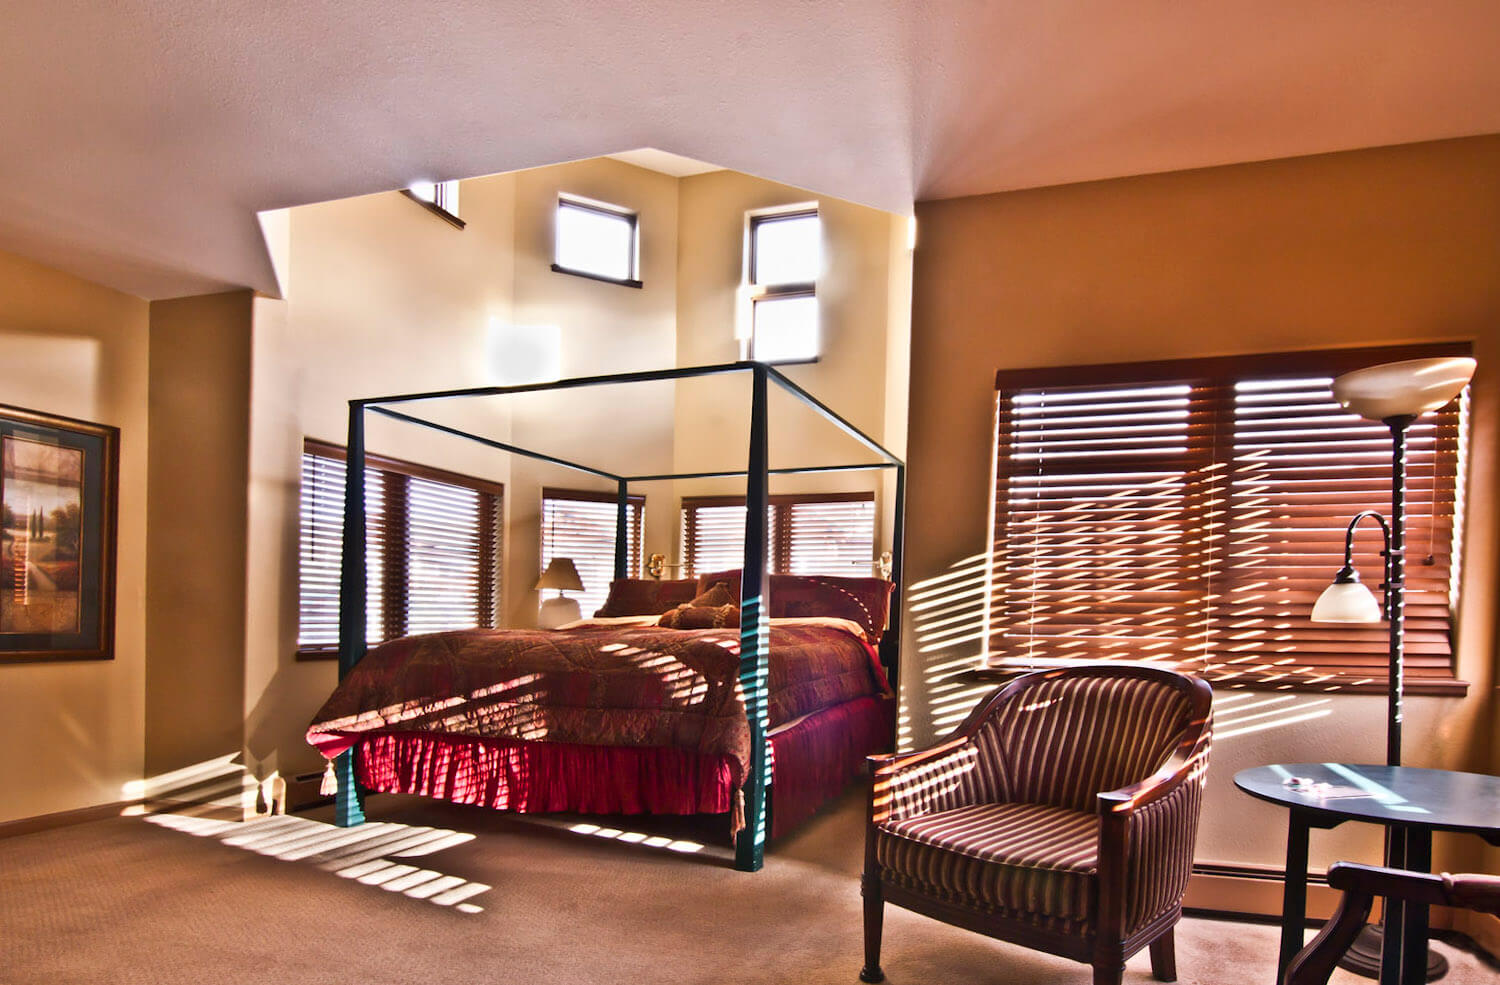 Frisco Inn Room 207 - Bed & breakfasts & inns of Colorado Association